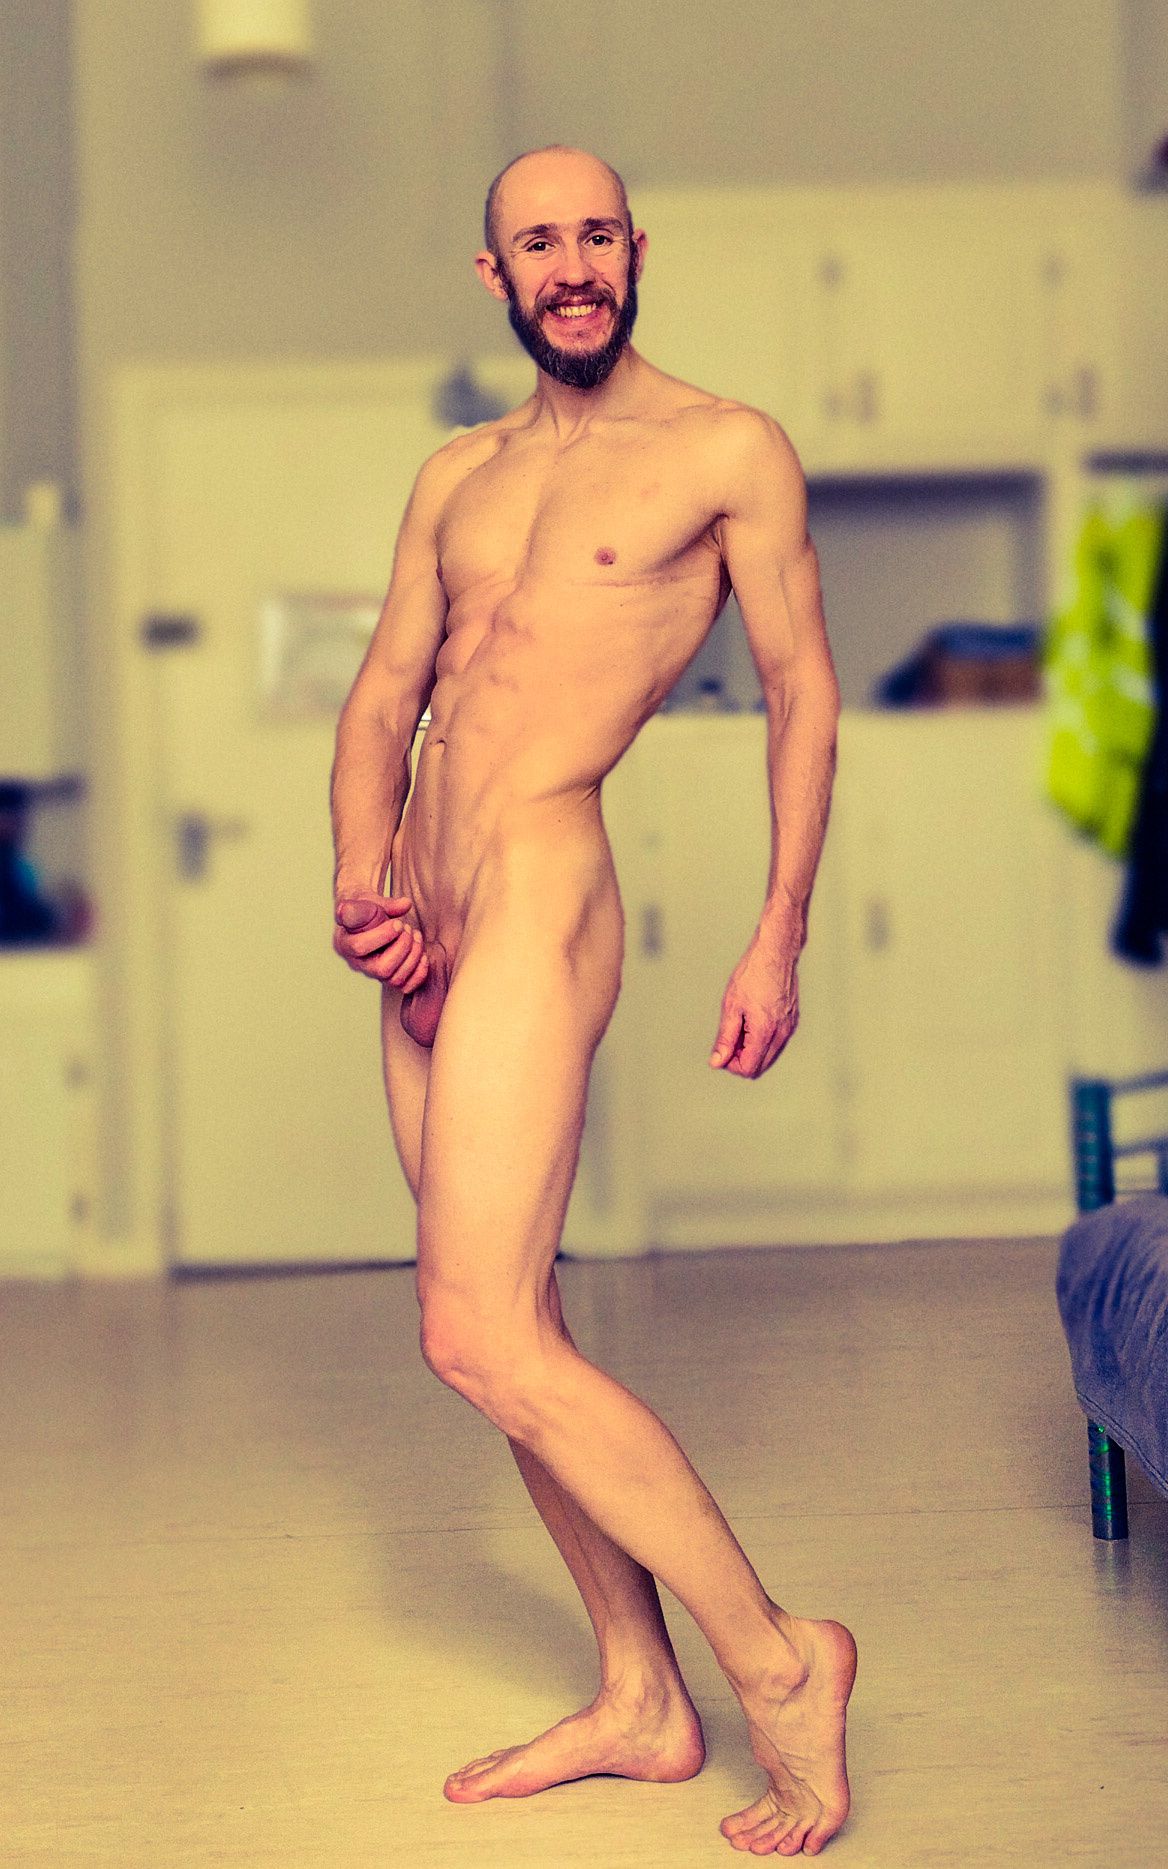 Posing nude